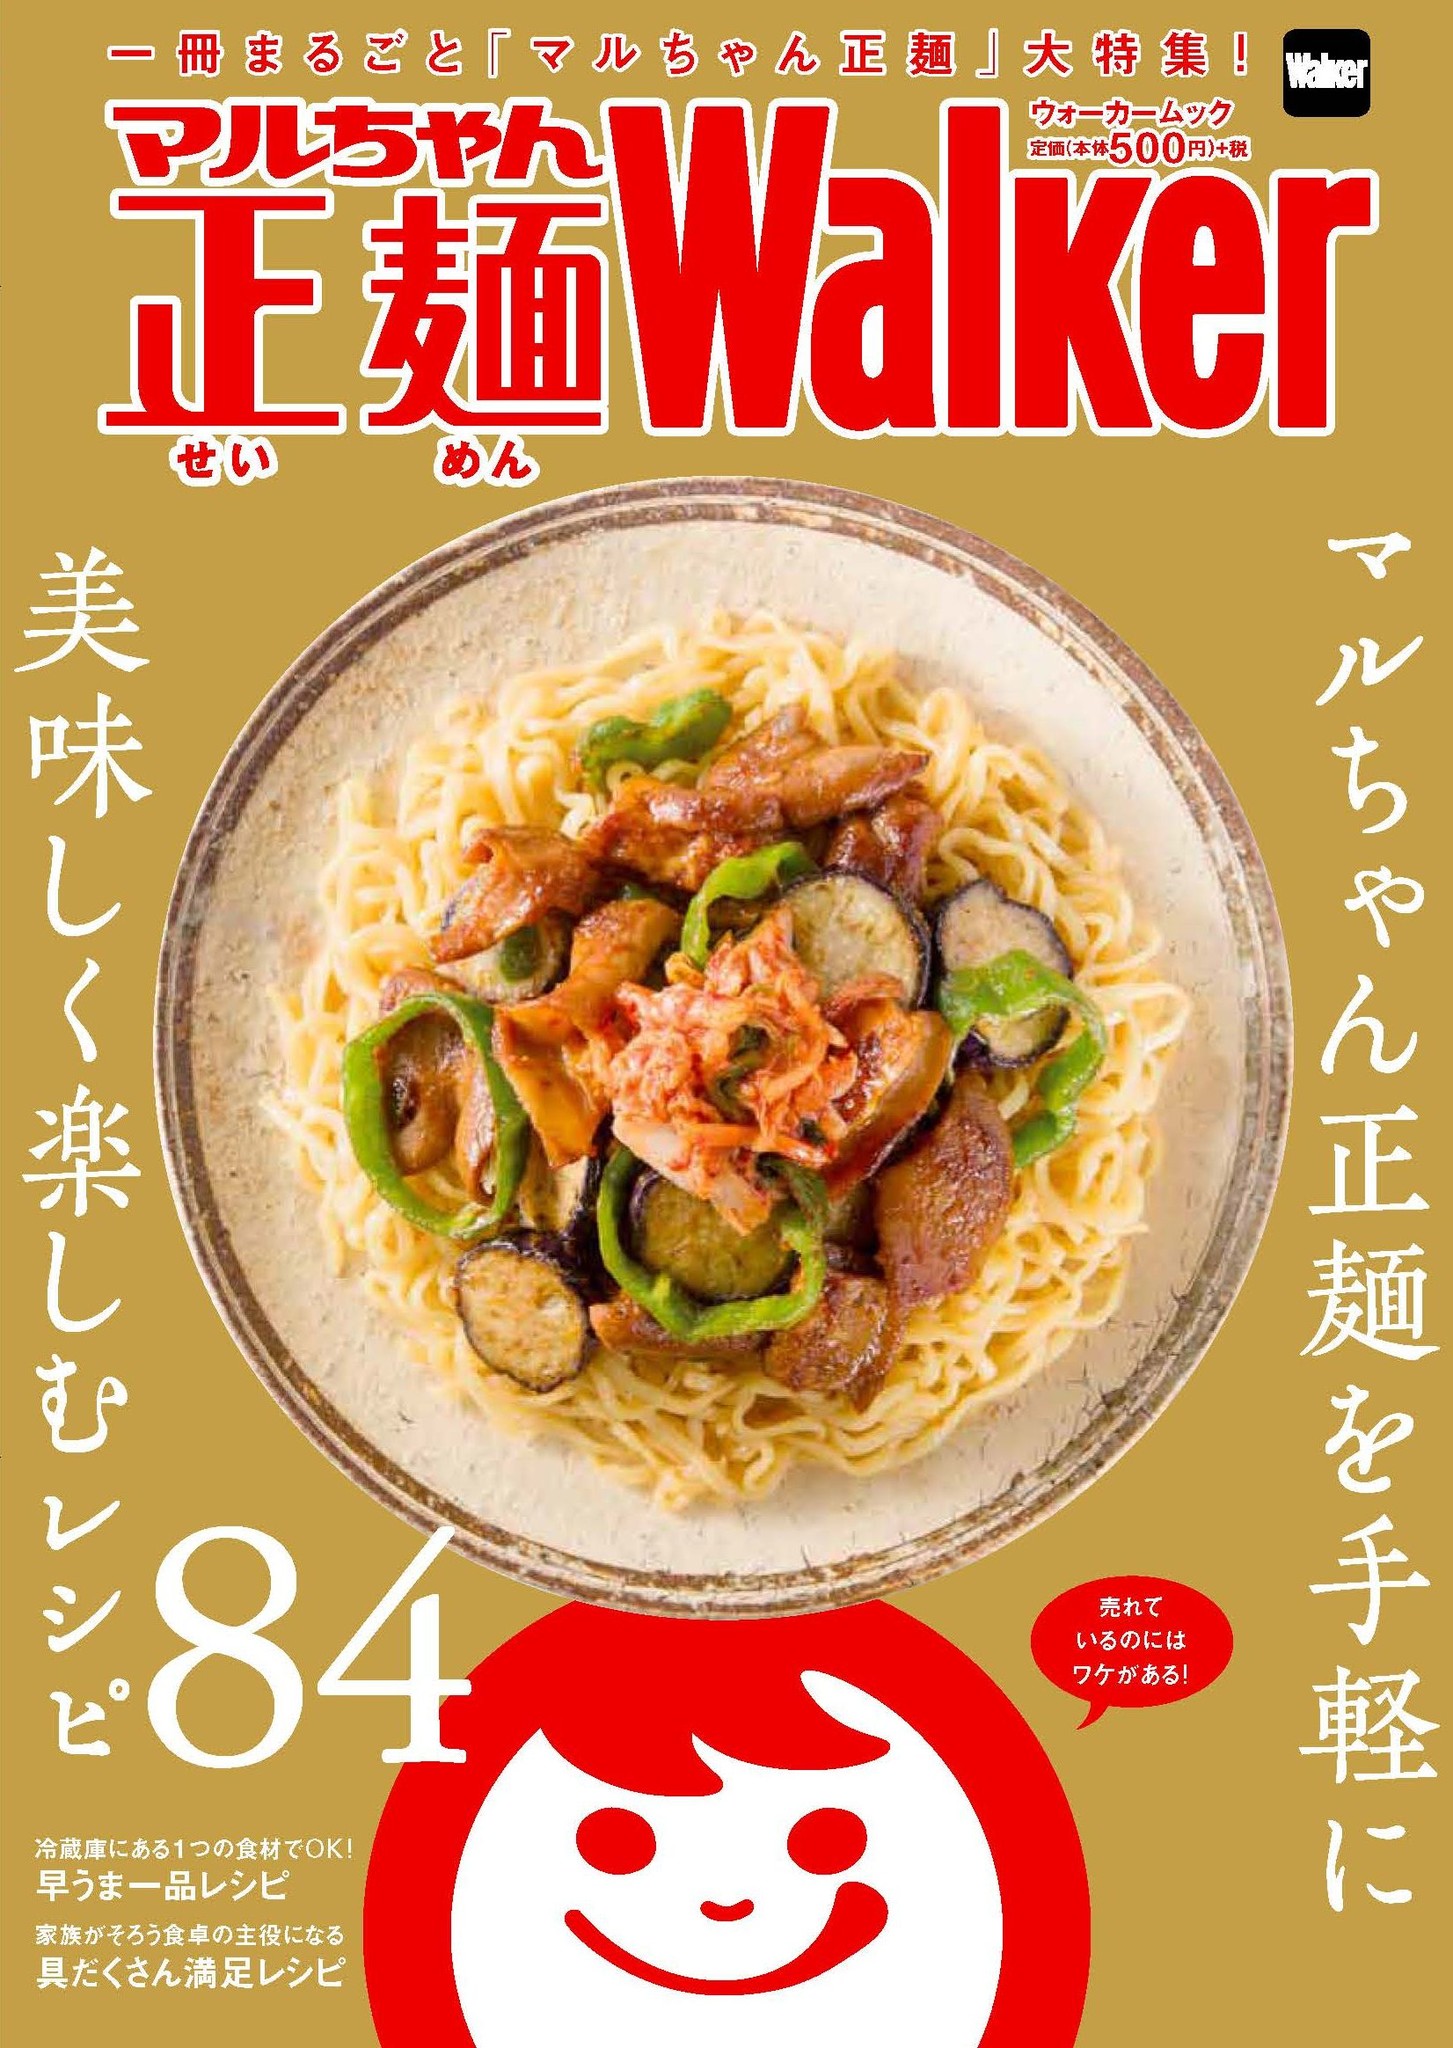 全84レシピ付き 一冊まるごと マルちゃん正麺 マルちゃん正麺walker 11月7日発売 株式会社kadokawaのプレスリリース